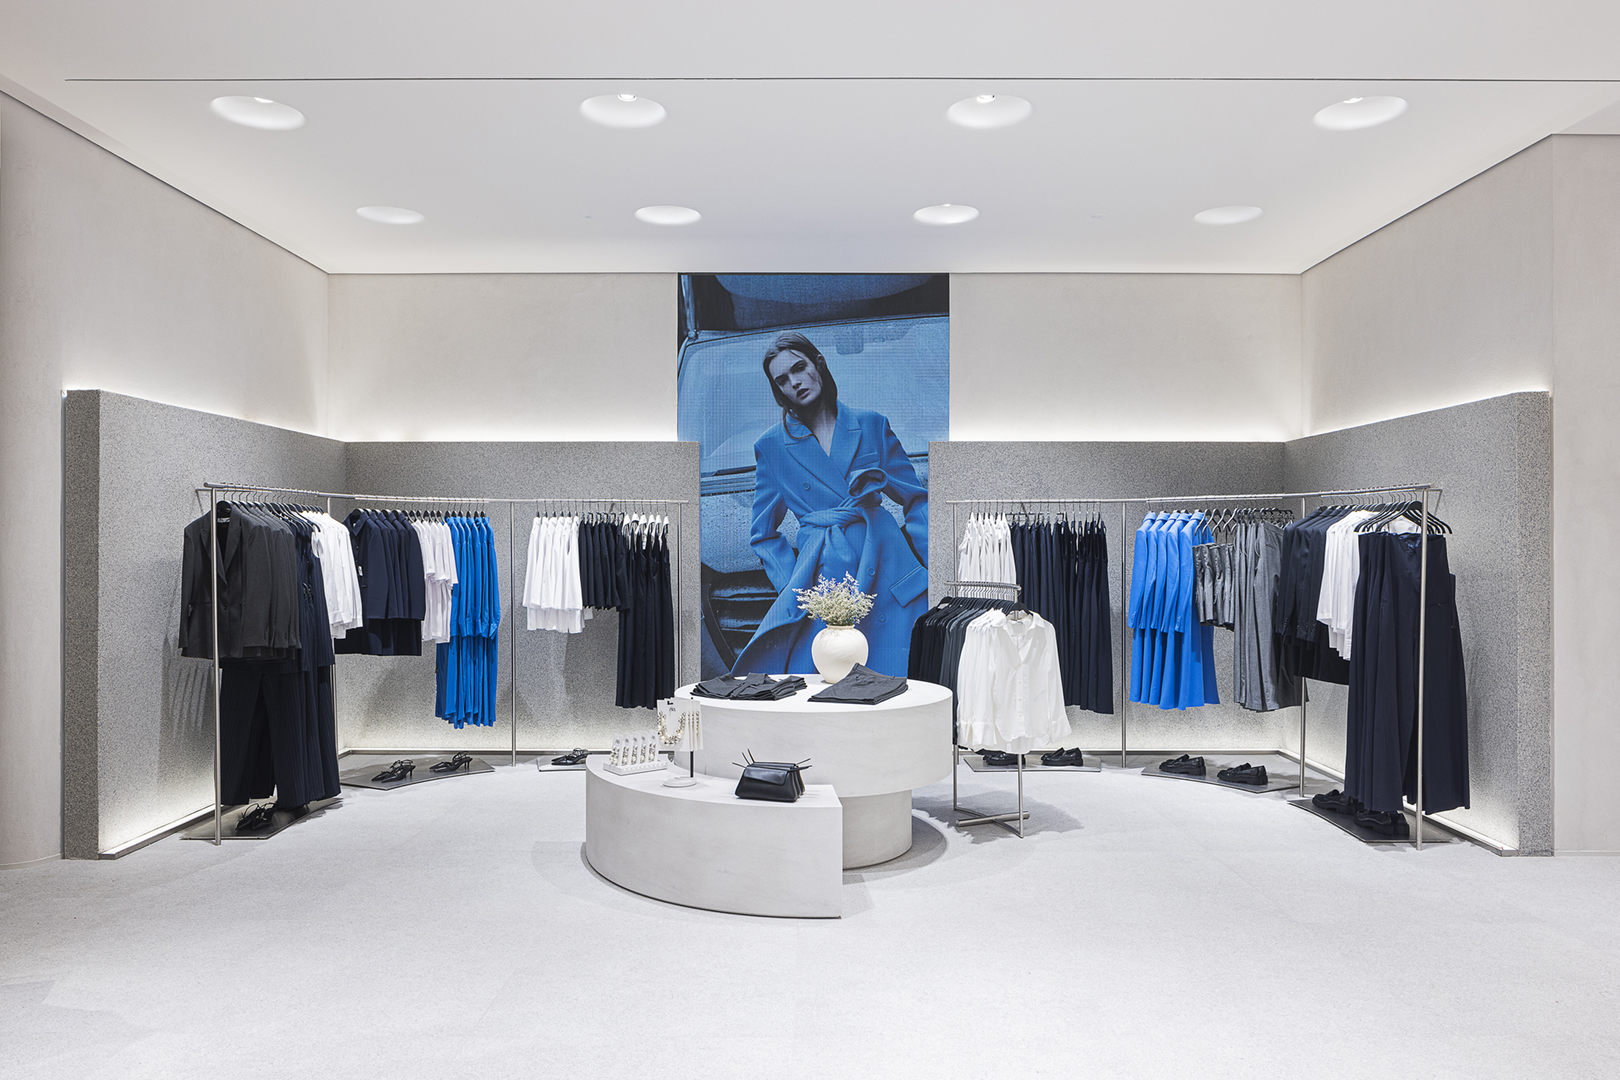 Nova loja da Zara impressiona pela arquitetura inteligente e sustentável -  CASACOR